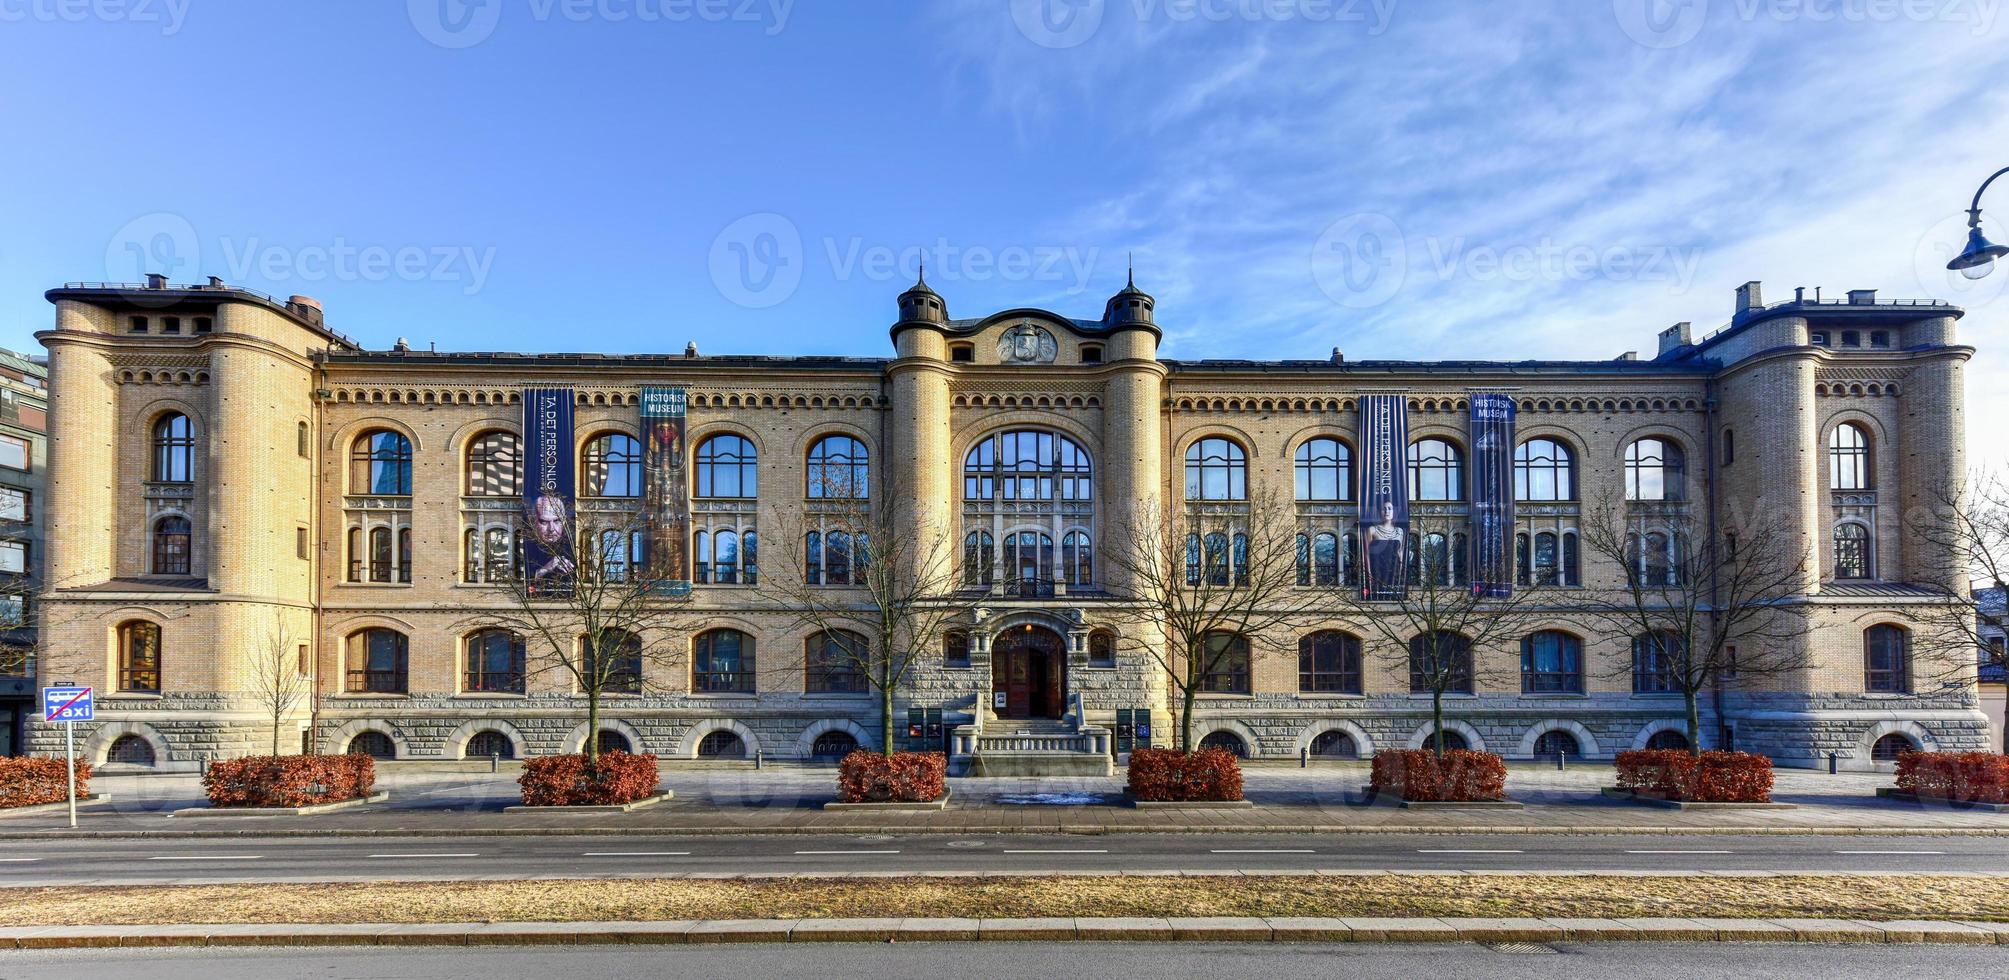 museu de história cultural, oslo na noruega foto